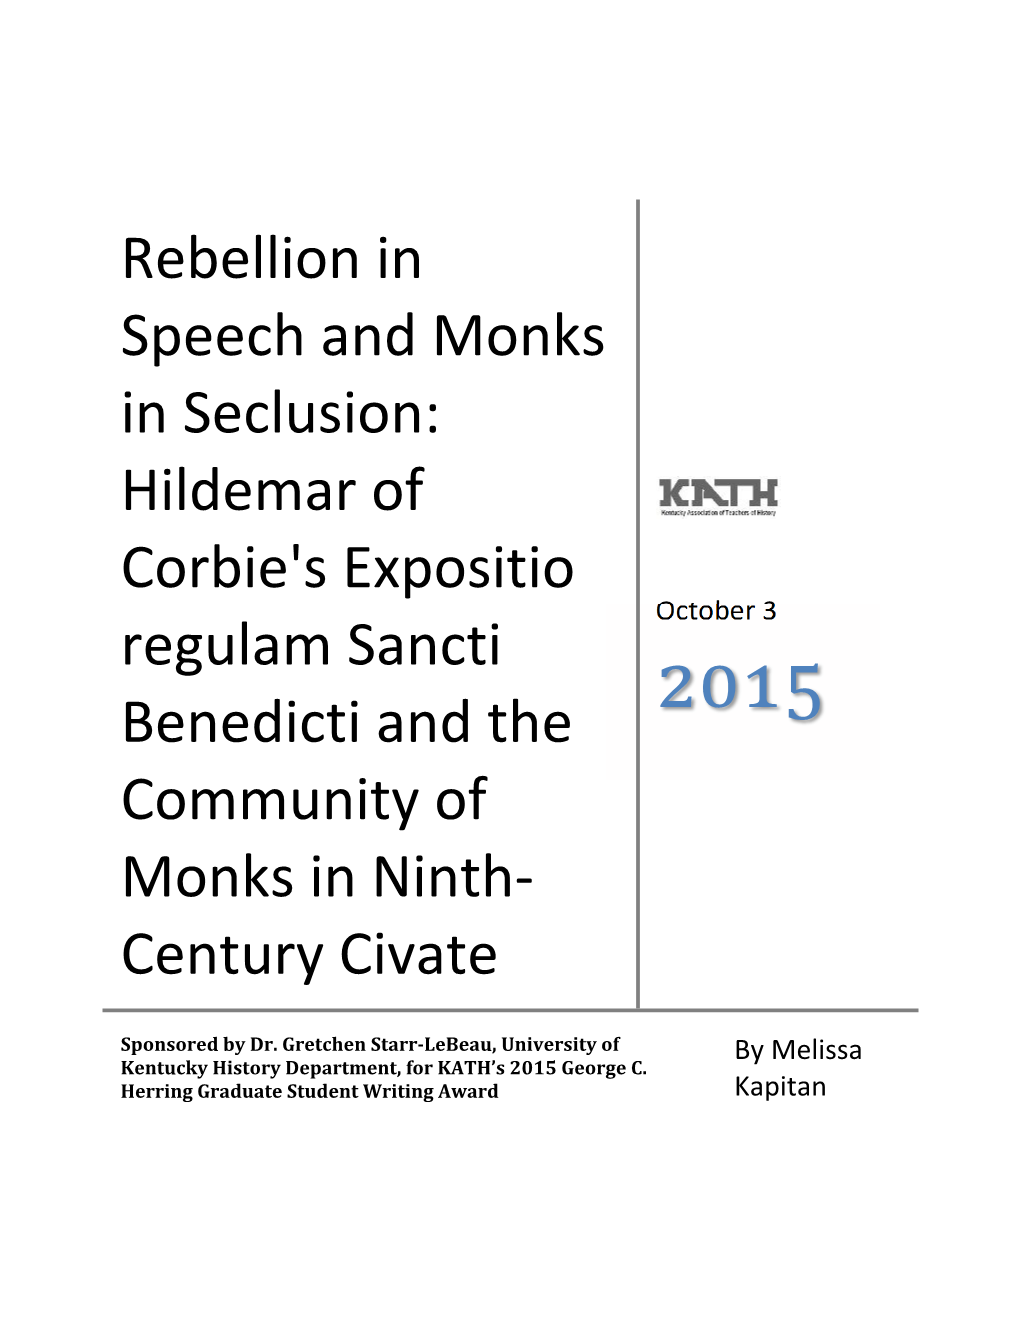 Hildemar of Corbie's Expositio Regulam Sancti Benedicti and the Community of Monks in Ninth-Century Civate